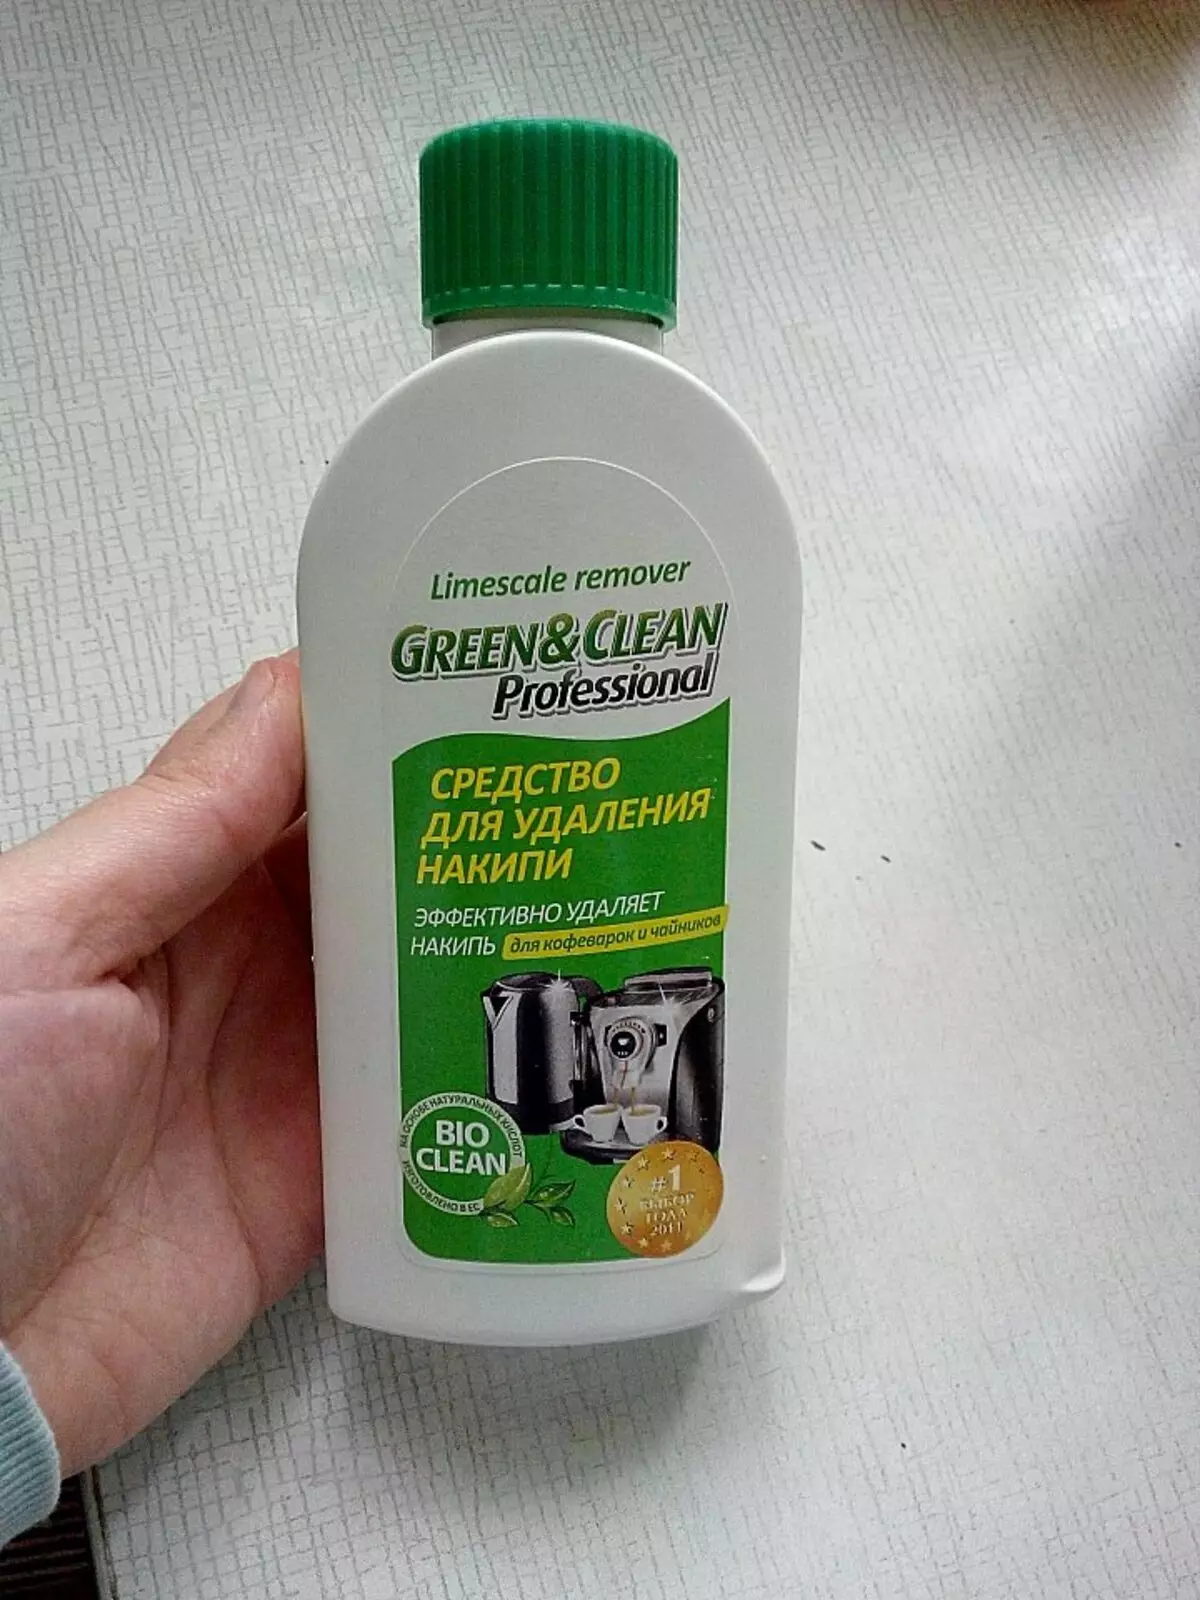 သံကိုစကေးမှသံကိုသန့်ရှင်းရေးလုပ်နည်း။ အိမ်တွင်ဓာတ်ပုံ 27 ခုသည်ရေနွေးငွေ့သံကိုဆေးကြောရန်, citric acid နှင့်ရှလကာရည်နှင့်အတူစက်၏တစ် ဦး တည်းသောသန့်ရှင်းရေးကိုမည်သို့သန့်ရှင်းရေးလုပ်ရမည်နည်း 21832_17